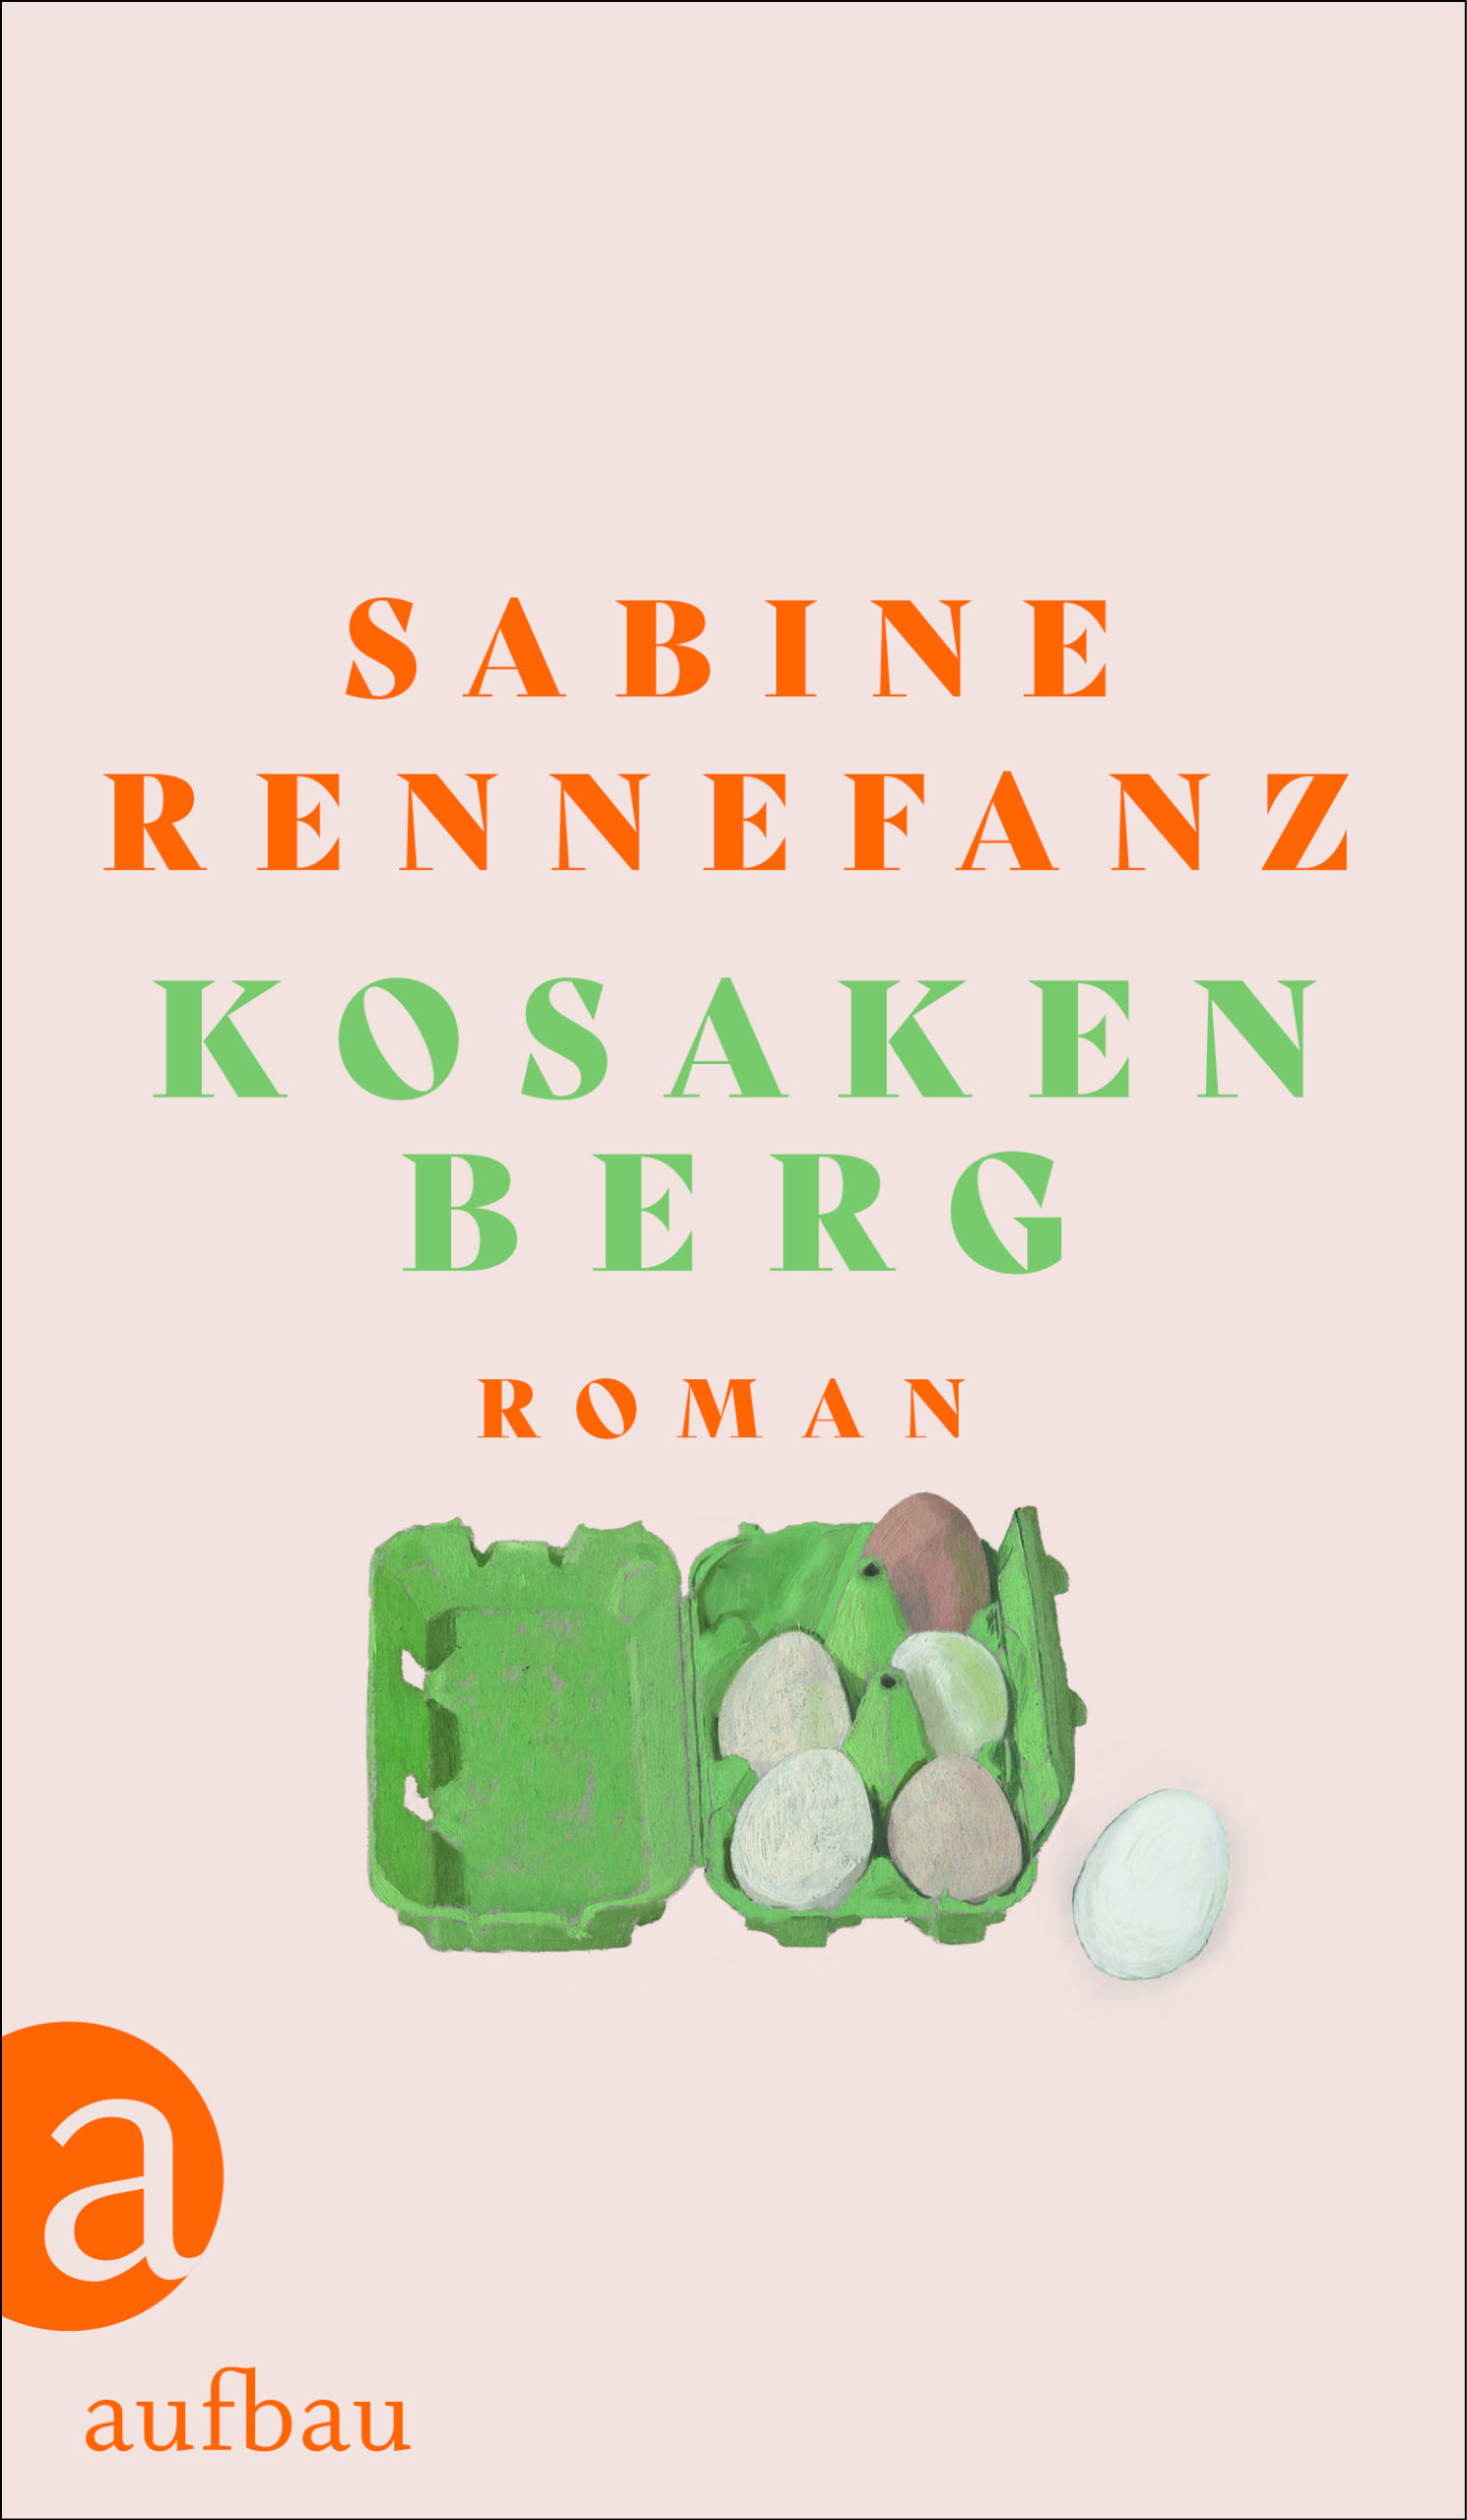 Lesung mit Sabine Rennefanz „Kosakenburg“